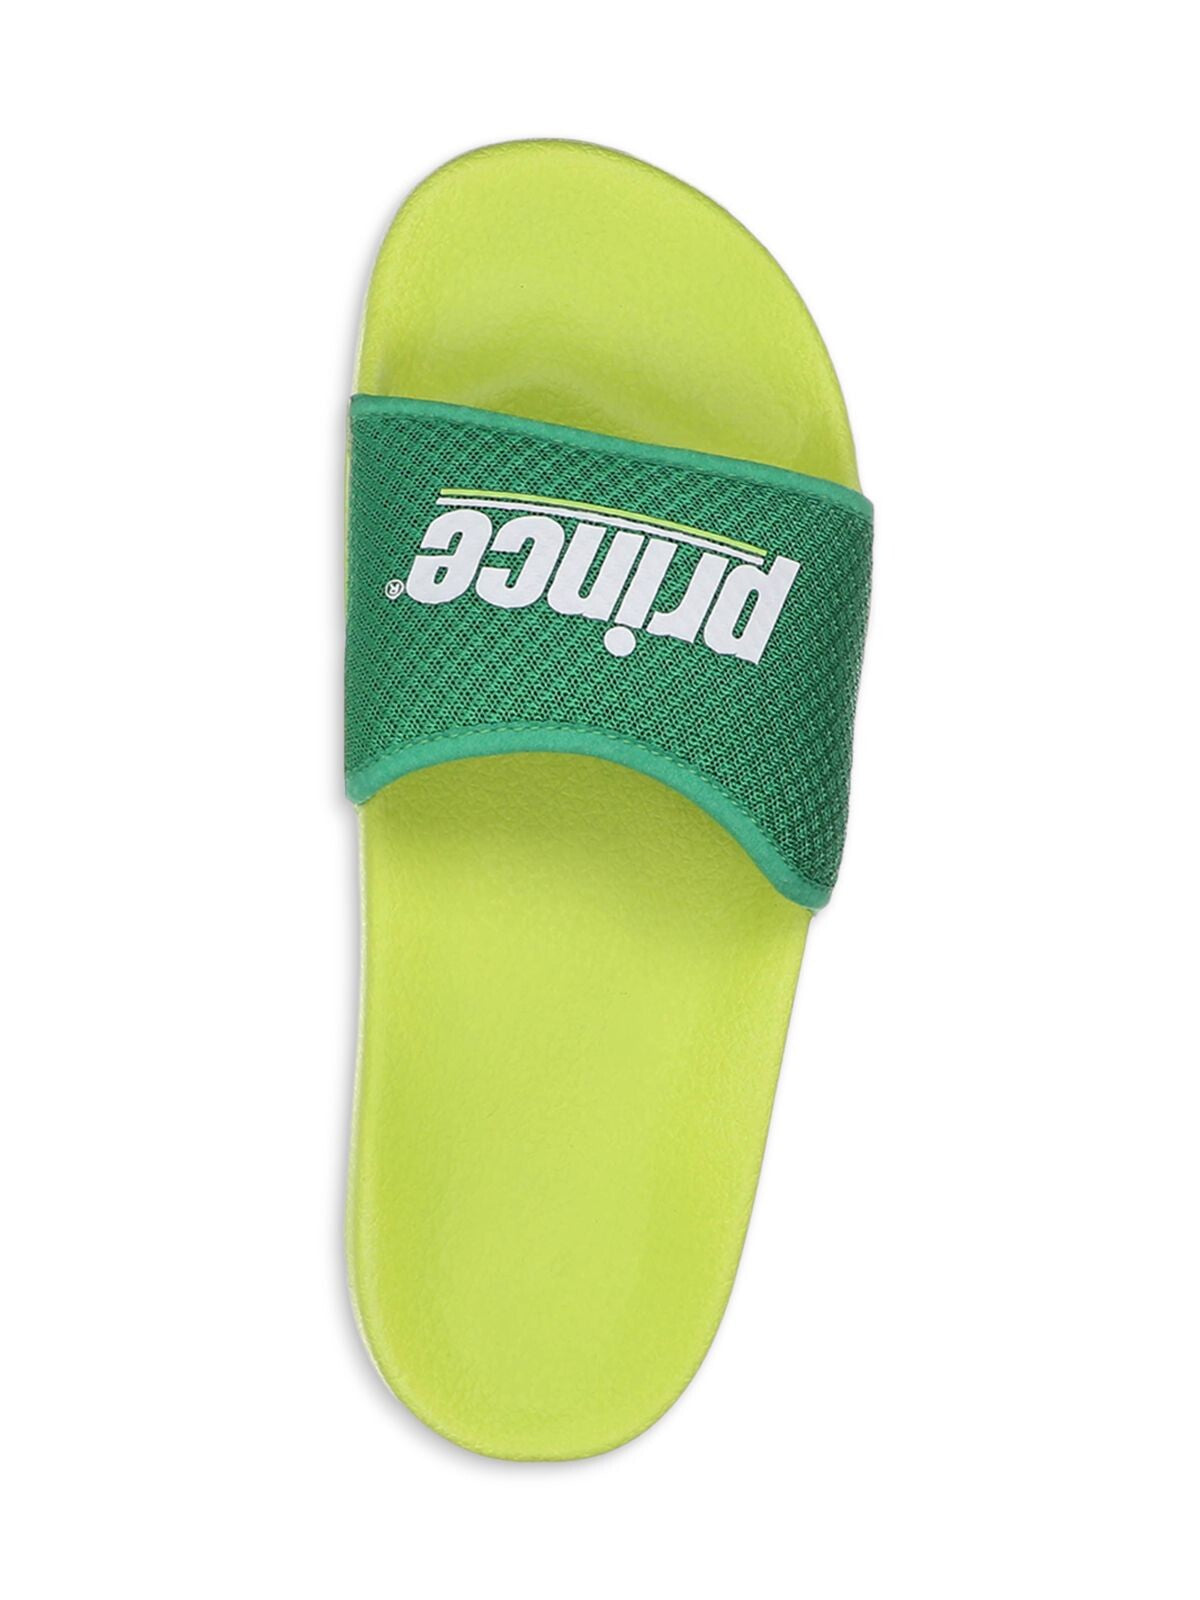 PRINCE Womens Green Logo Comfort Prism Round Toe Platform Slip On Slide Sandals Shoes 8-8.5